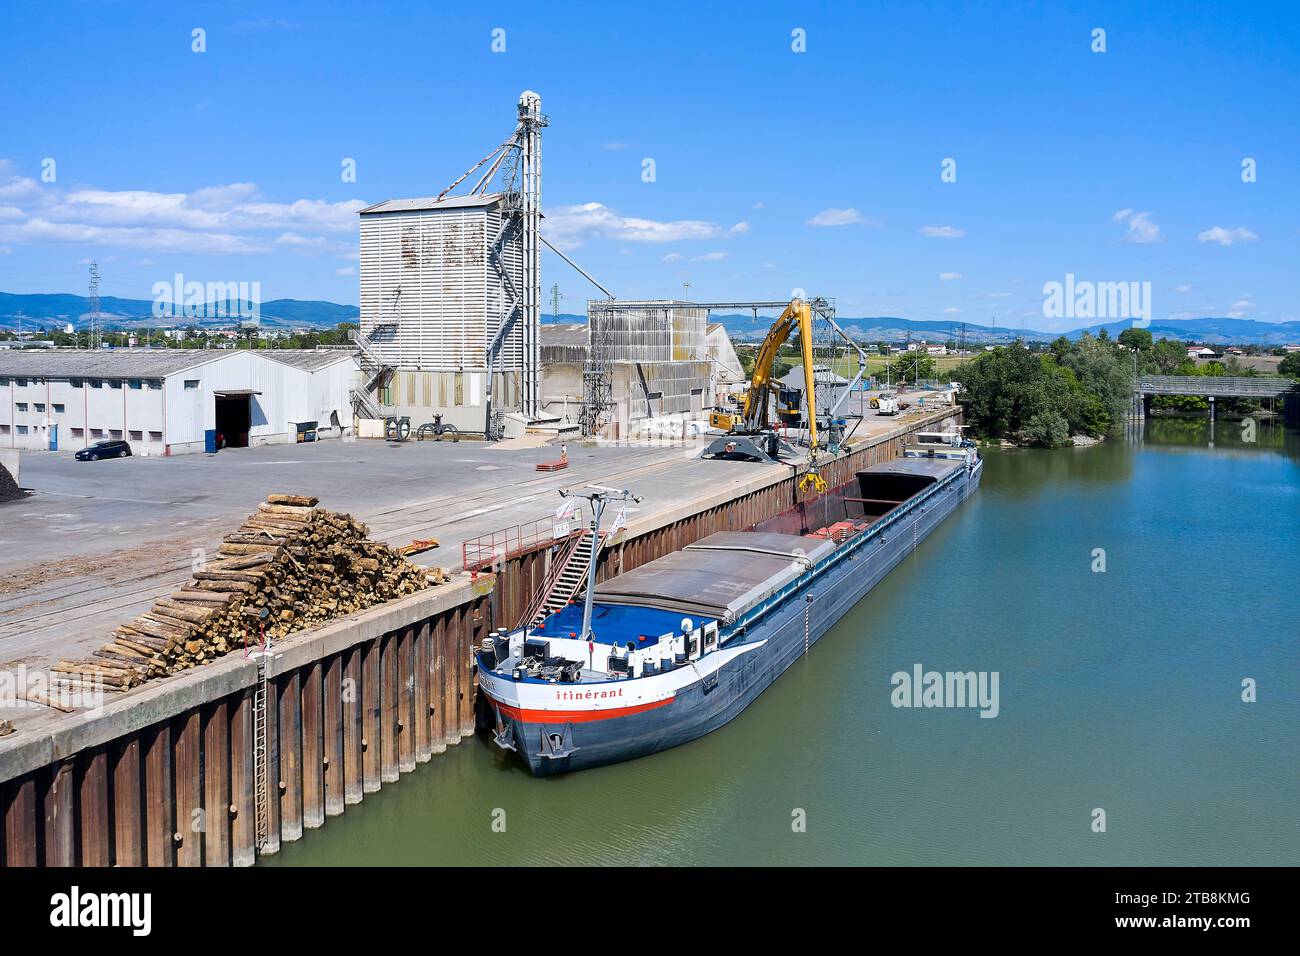 Villefranche-sur-Saône (centre-est de la France) : manutention de bateaux dans le port fluvial. Déchargement de 910 tonnes de tôle de la barge « l'itinéraire » Banque D'Images